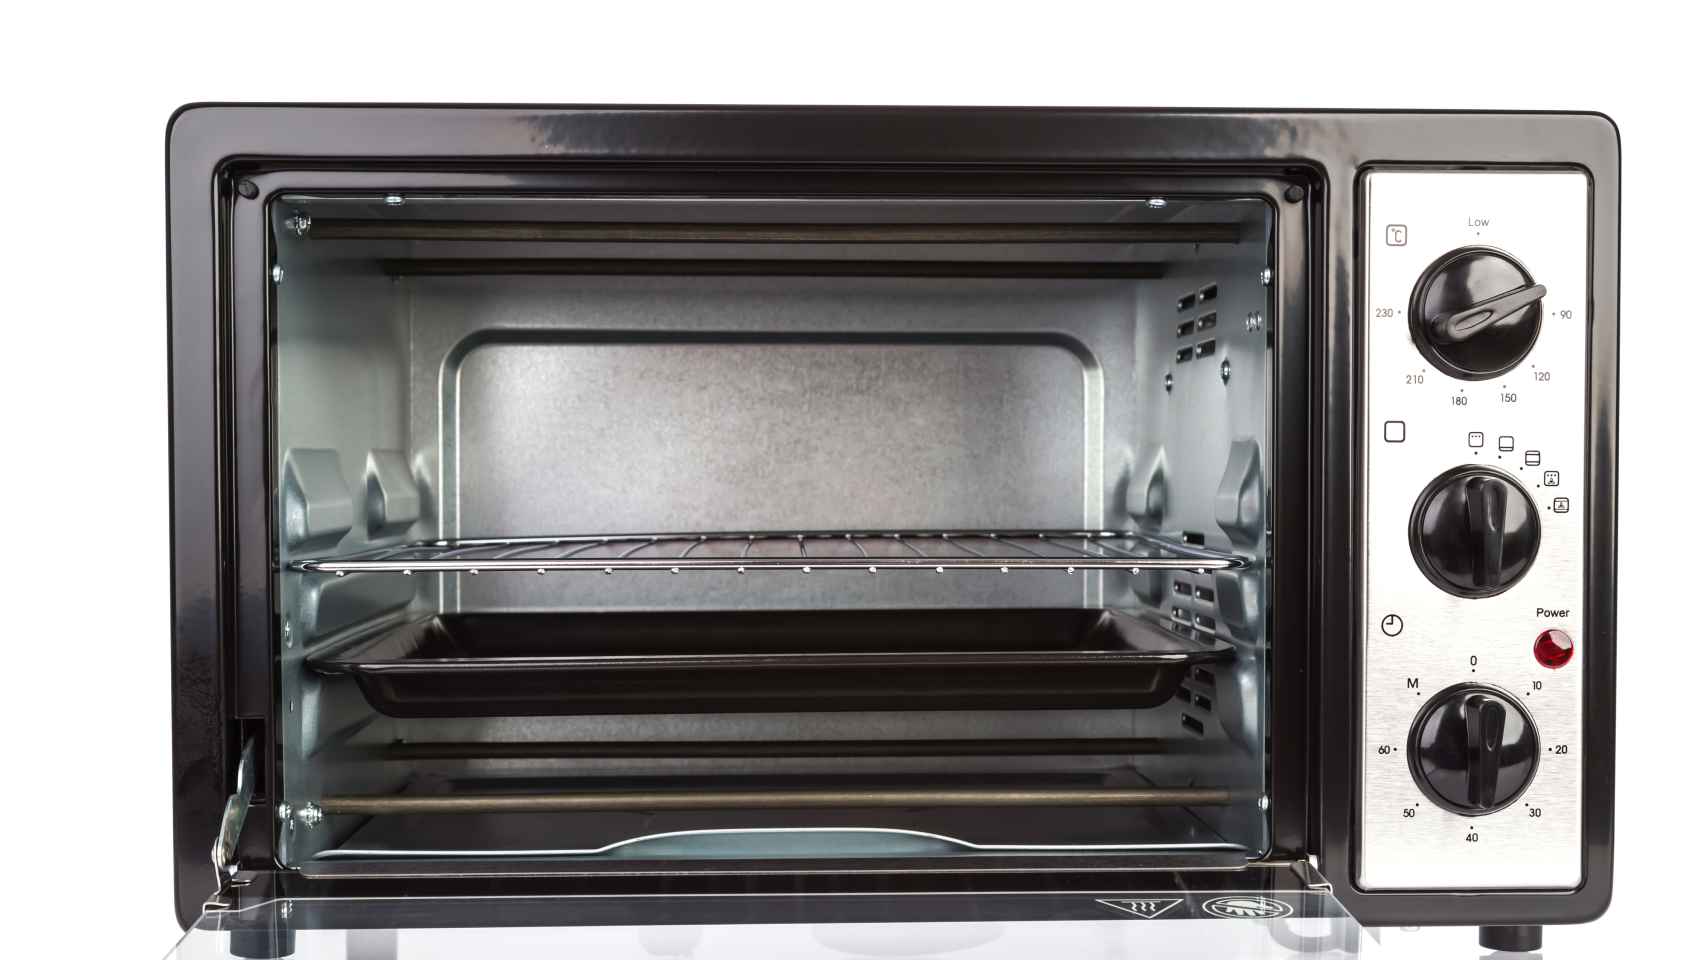 Cómo limpiar el cristal del horno?